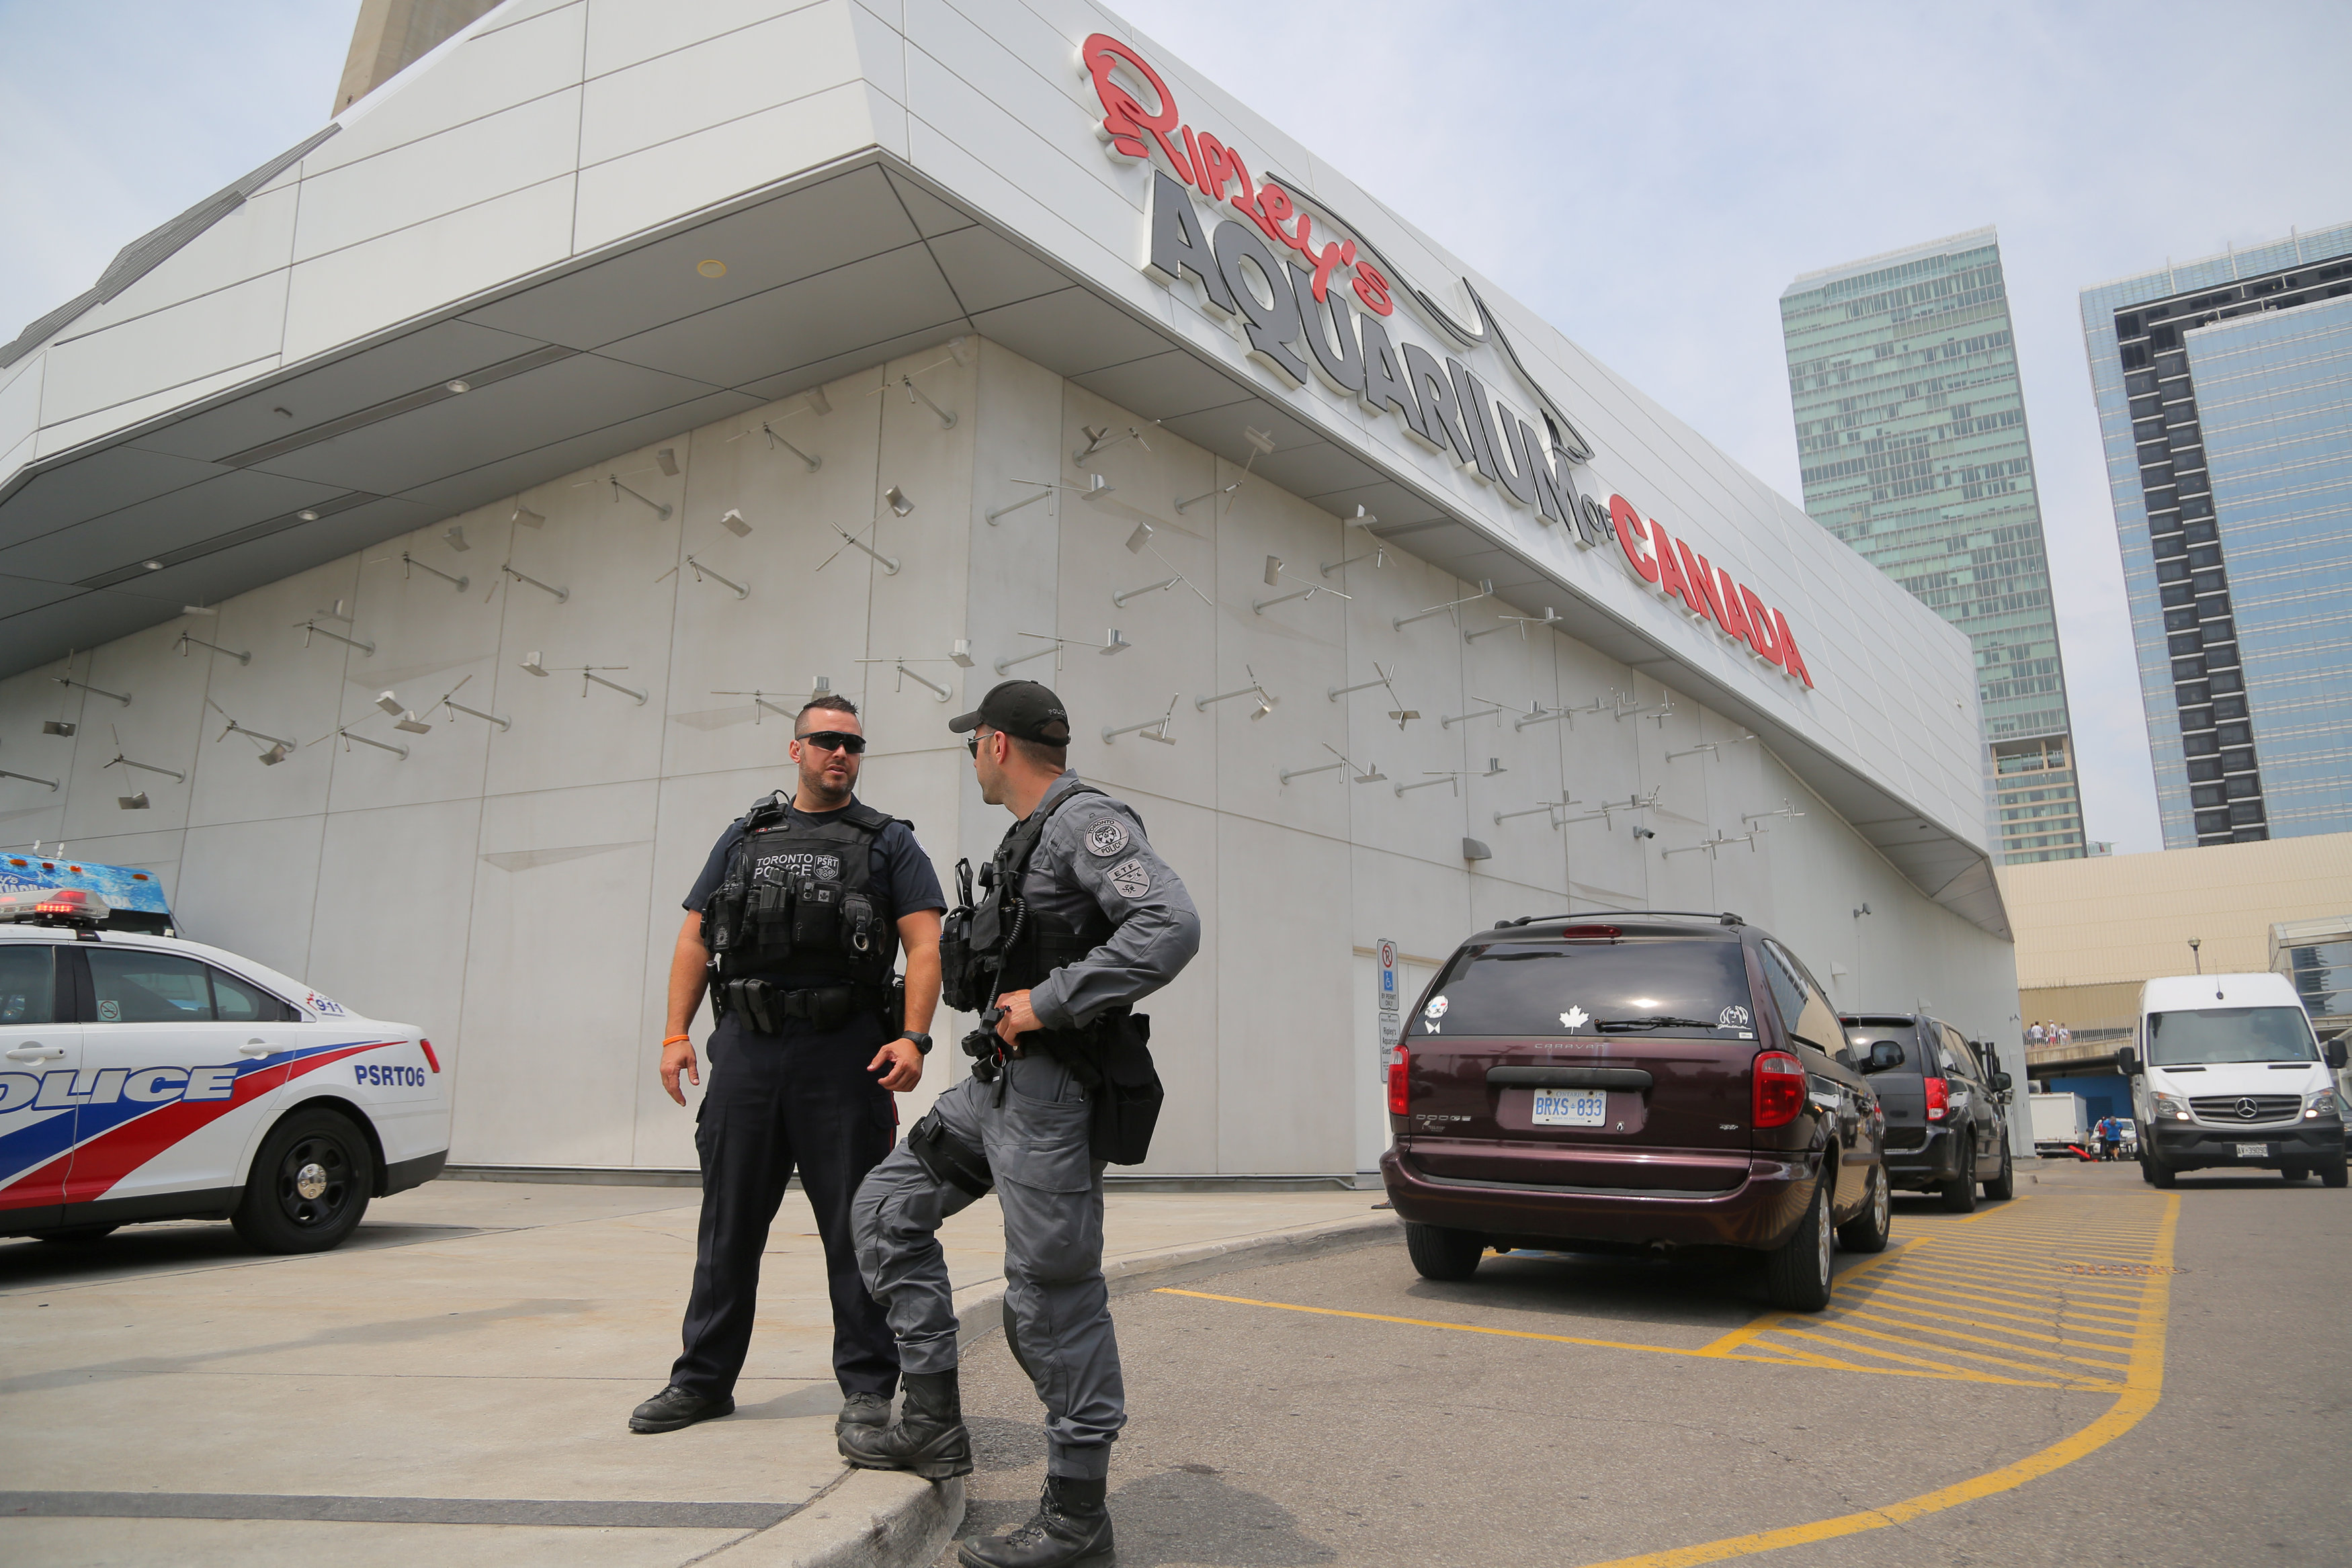 Posible amenaza de ataque con un vehículo genera alerta en Toronto